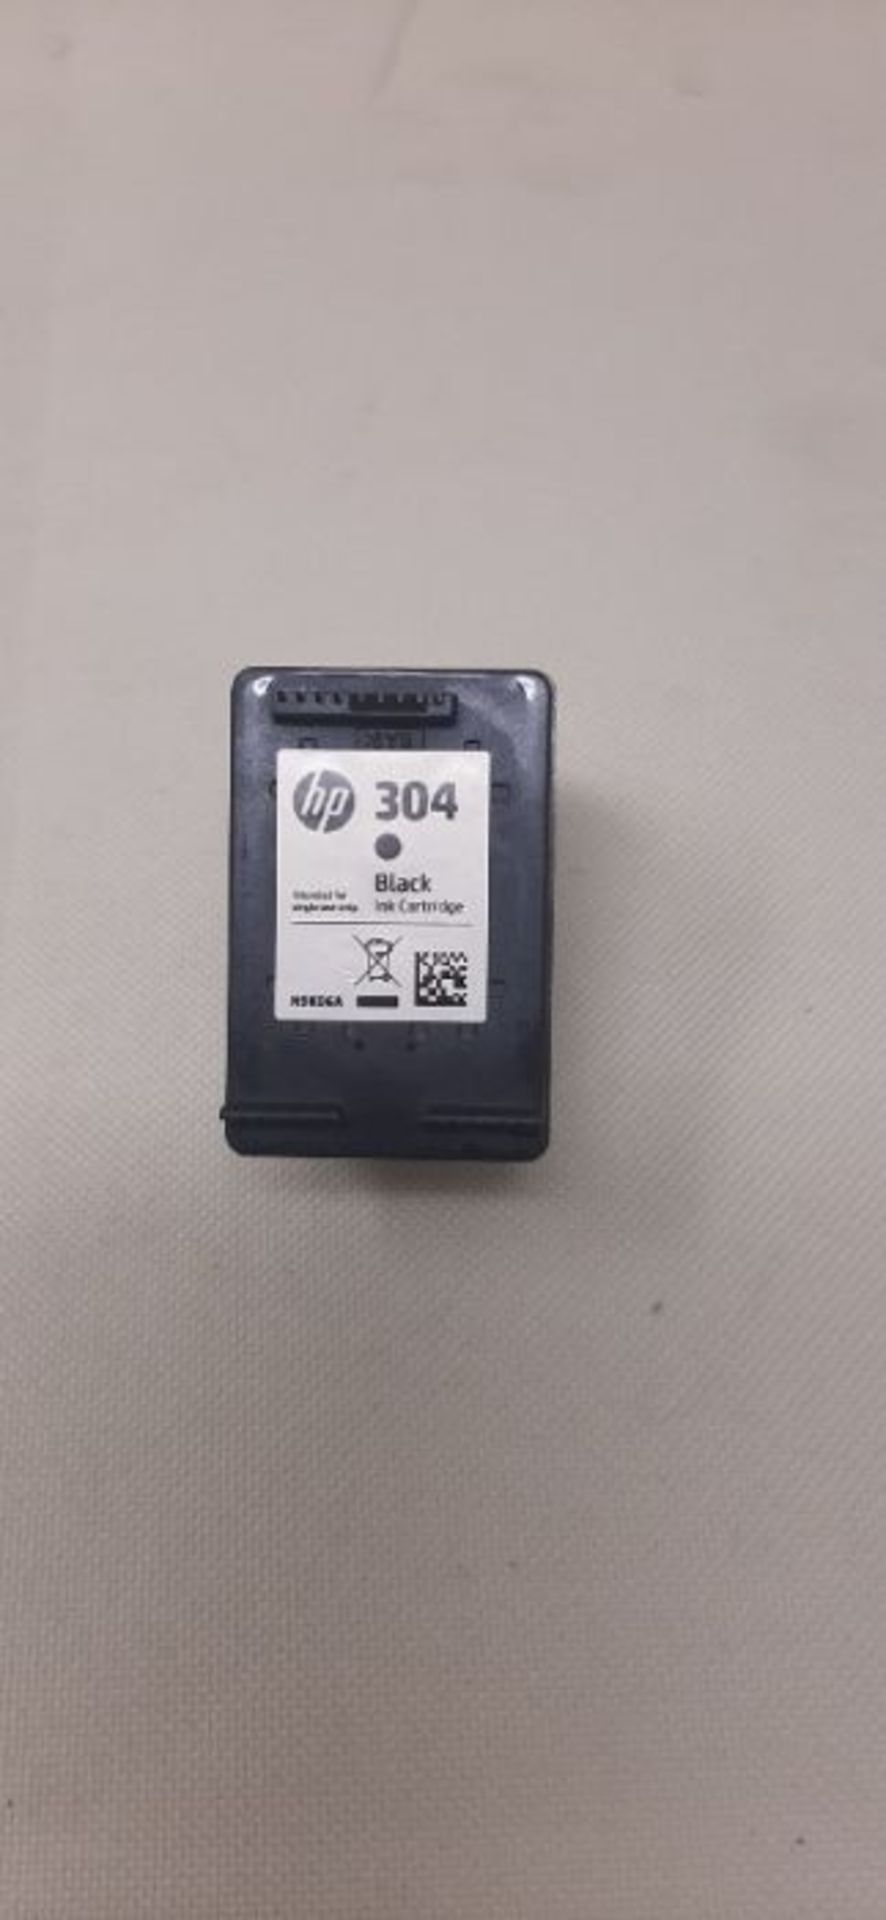 HP N9K06AE 304 Original Ink Cartridge, Black, Single Pack - Image 2 of 2